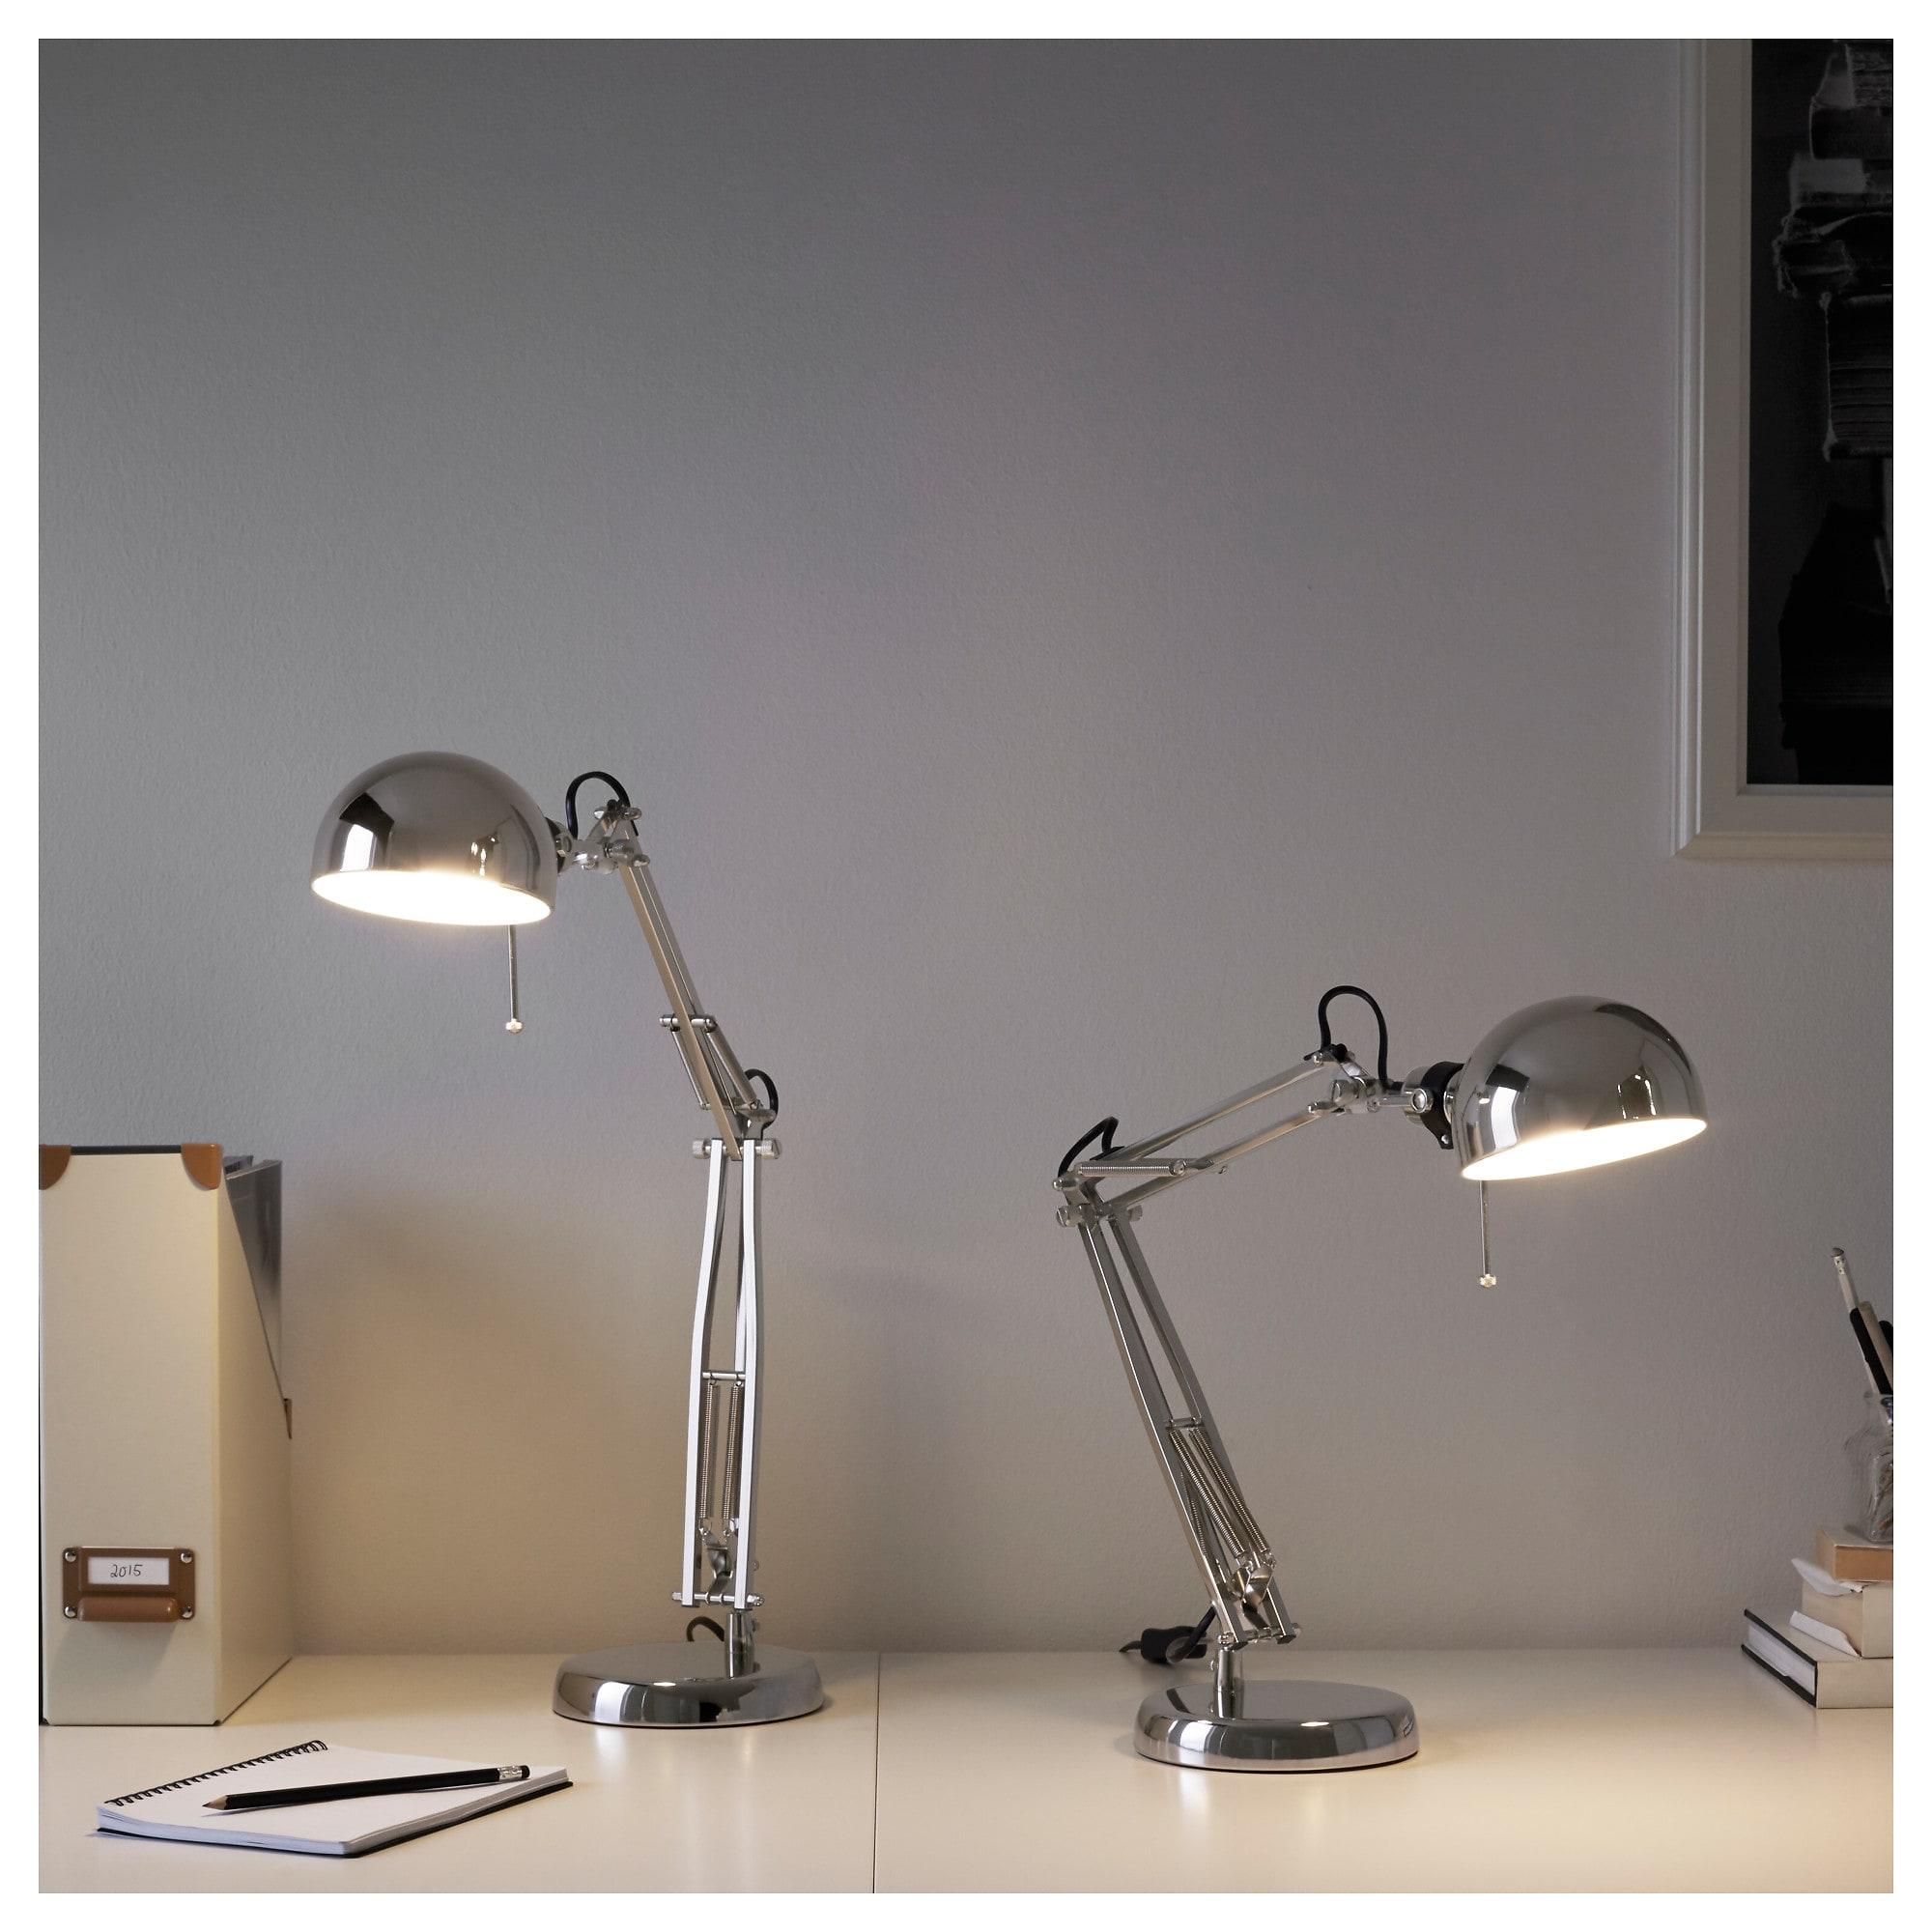 ราคาถูก FORSÅ ฟอร์ชอัว โคมไฟโต๊ะทำงาน ชุบนิกเกิล ให้แสงสว่างตรงจุด เหมาะสำหรับใช้เป็นโคมไฟอ่านหนังสือปรับทิศทางแสงได้ง่าย จาก IKEA